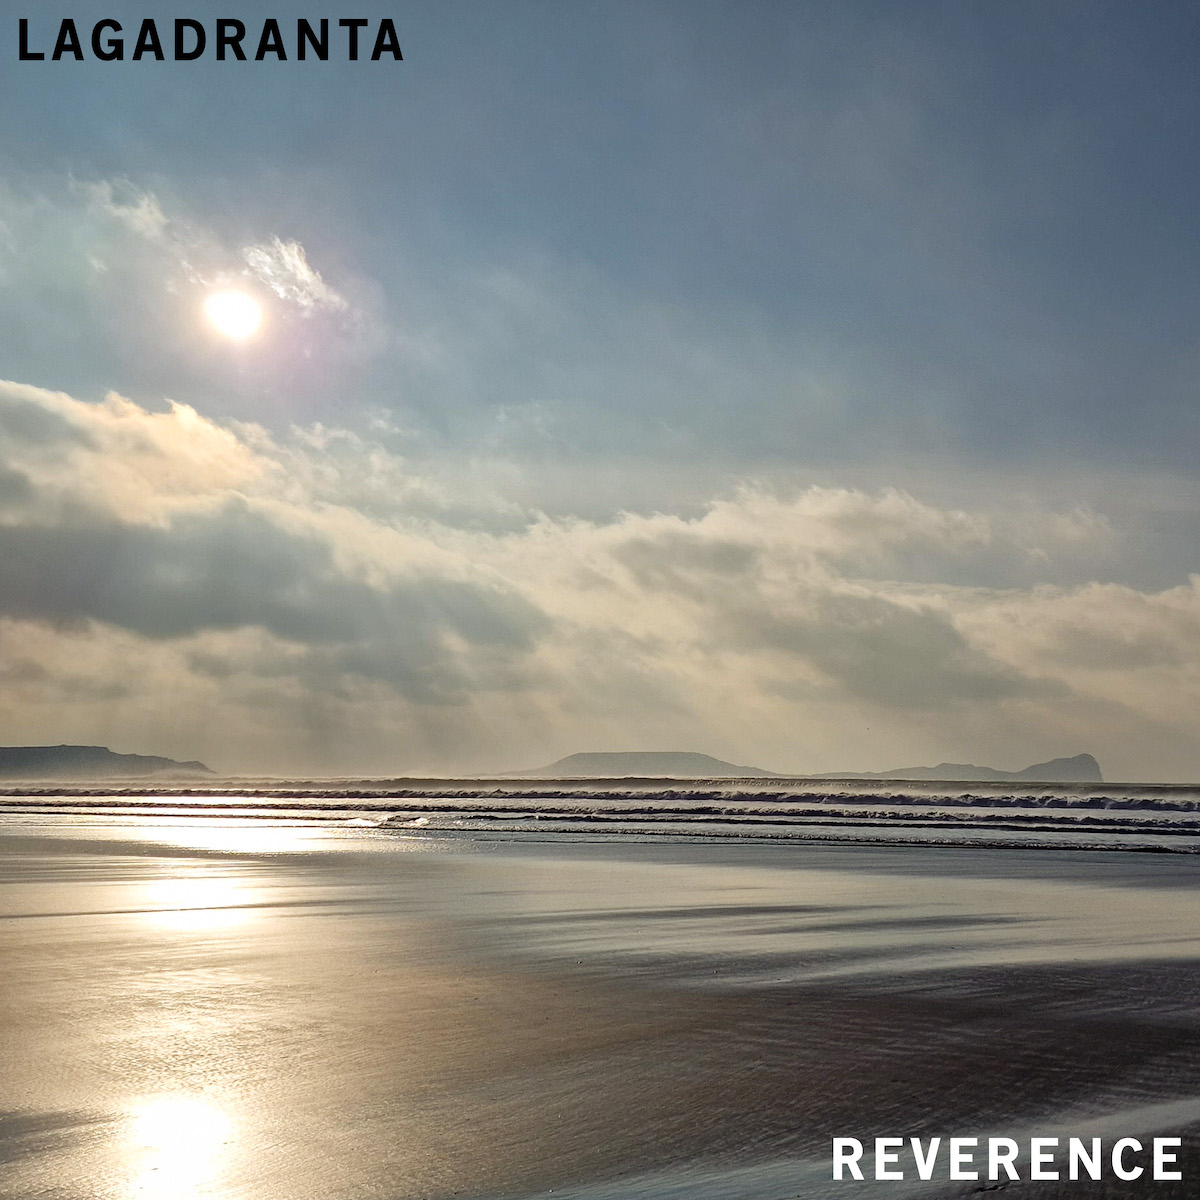 LISTEN: “Reverence” by Lagadranta